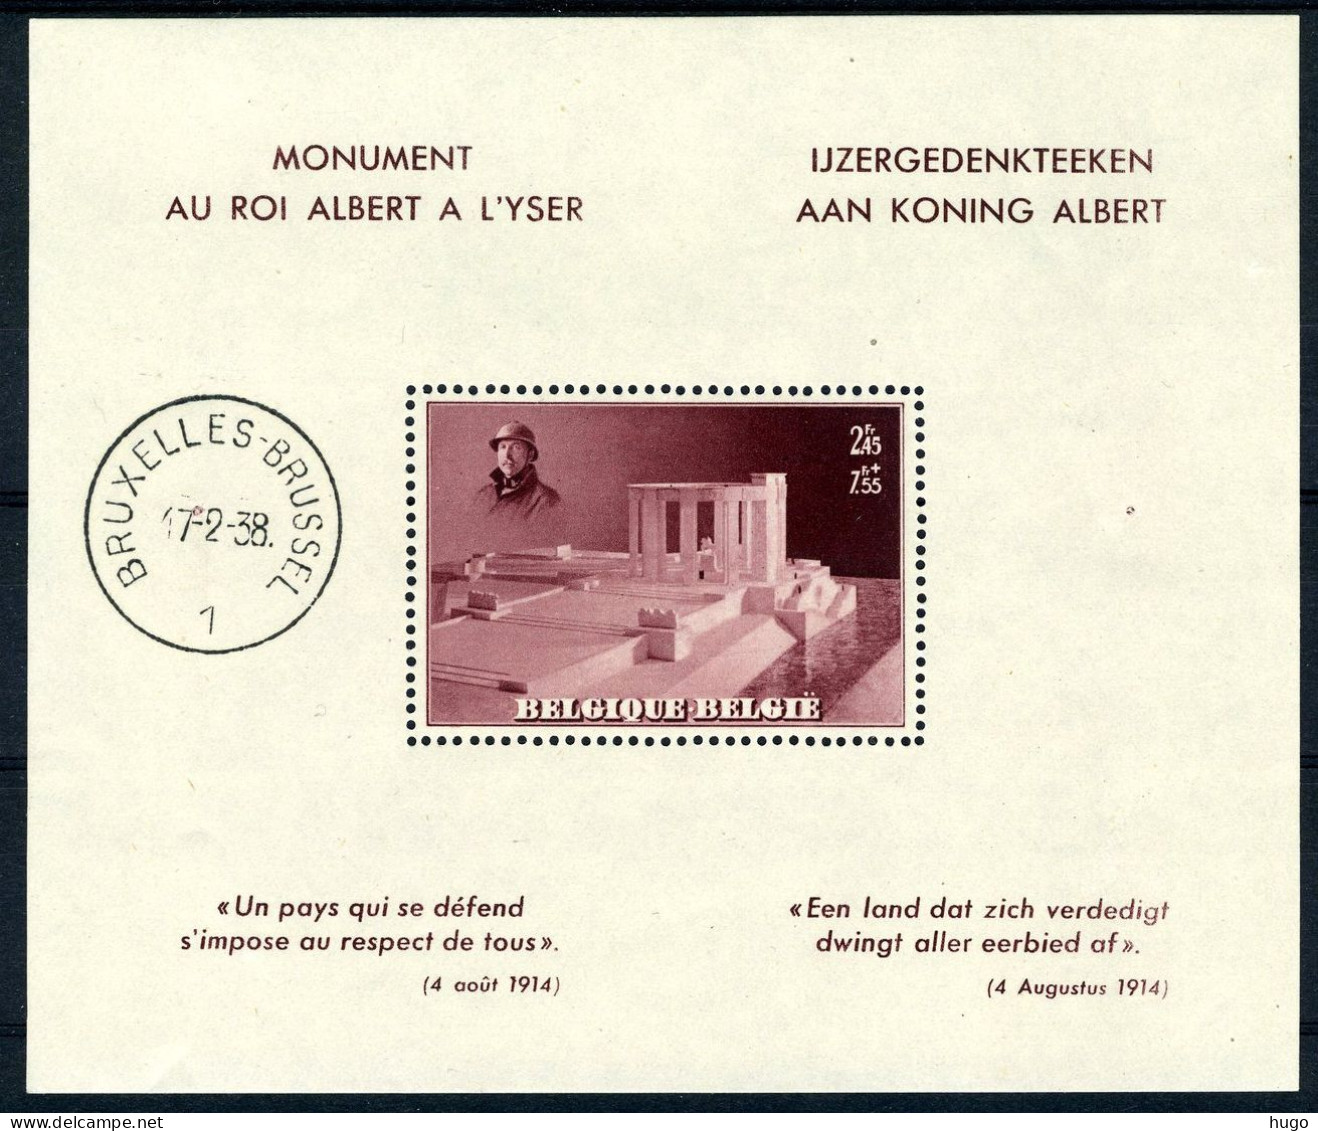 Blok 8 MNH 1938 - Gedenkteken Van Z.M. Koning Albert 1 In Nieuwpoort. - 1924-1960